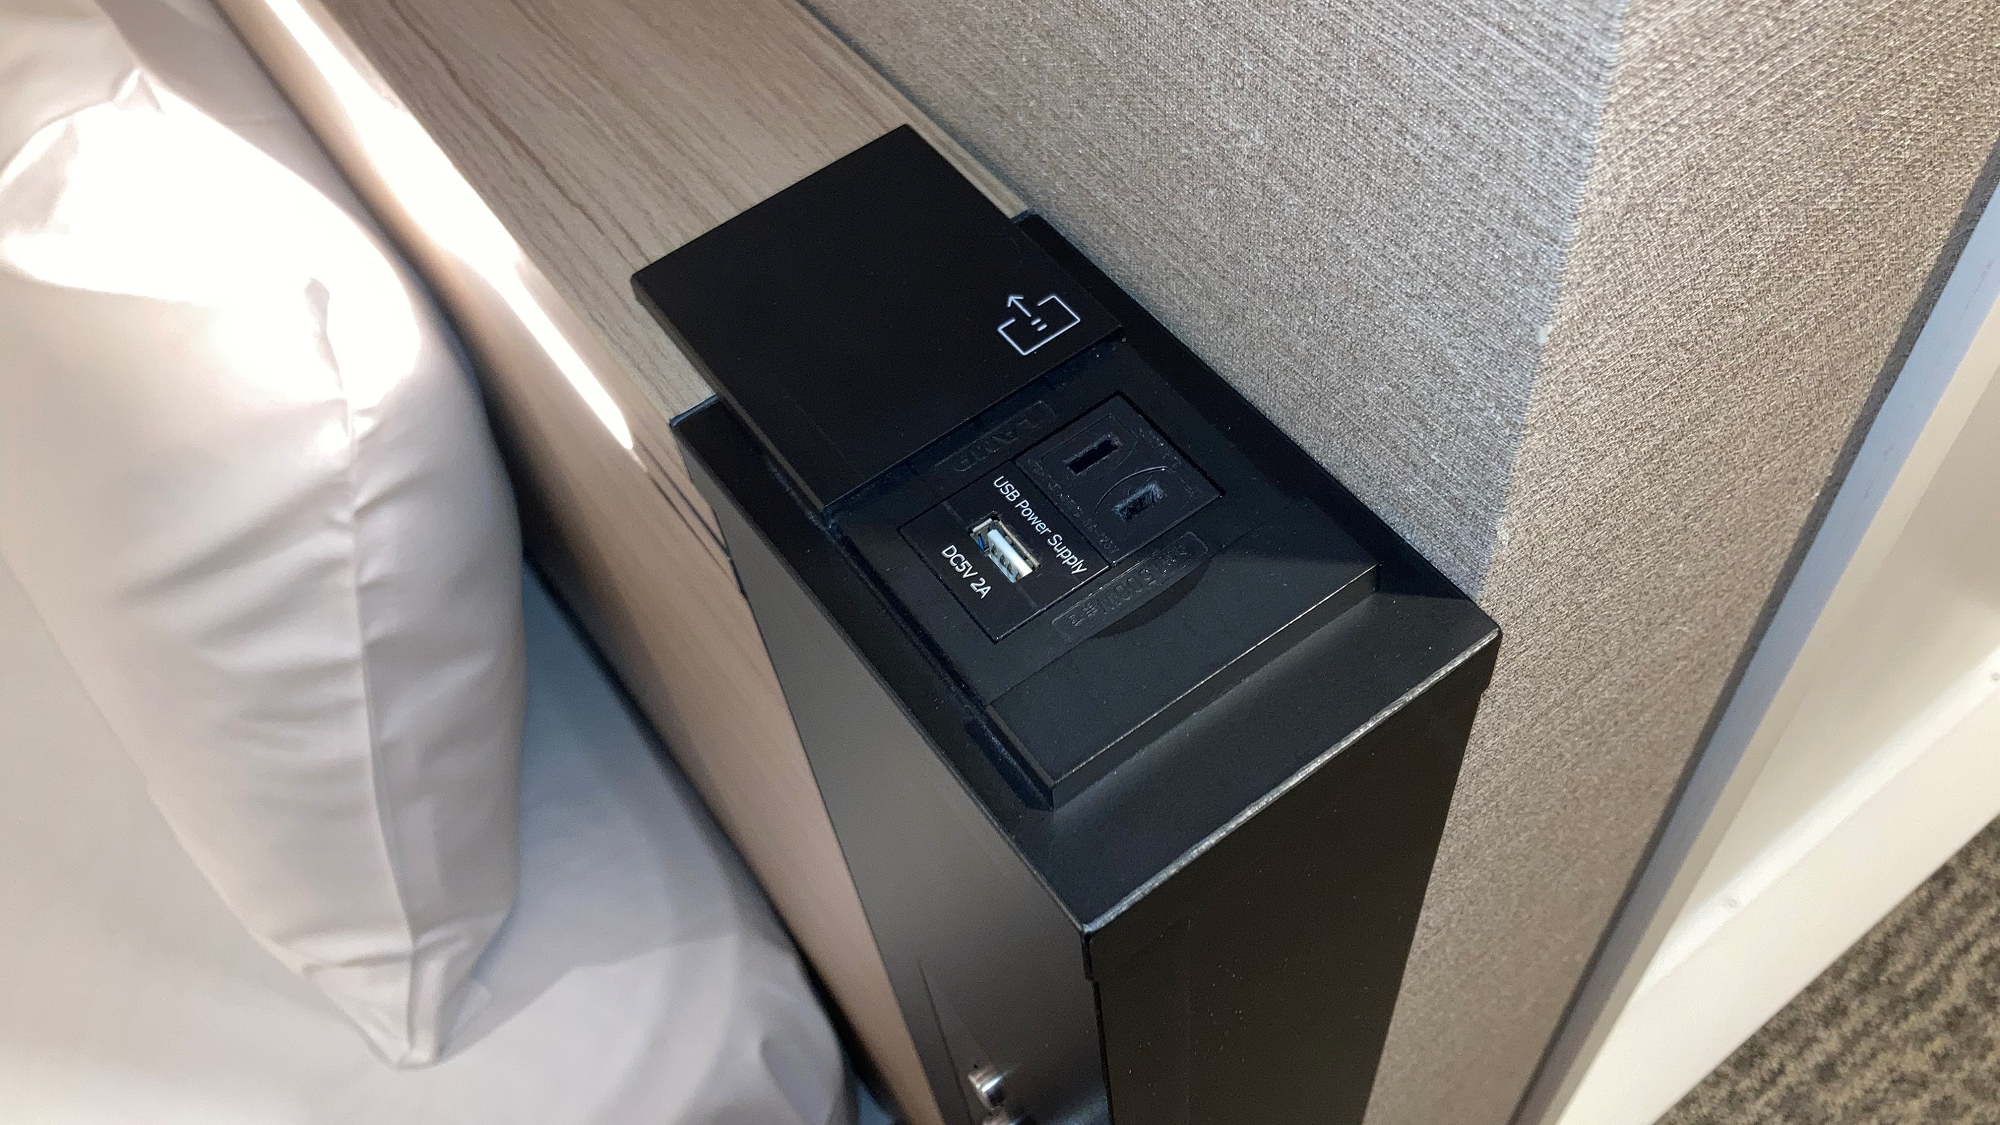 Dilengkapi dengan port USB yang nyaman di samping tempat tidur